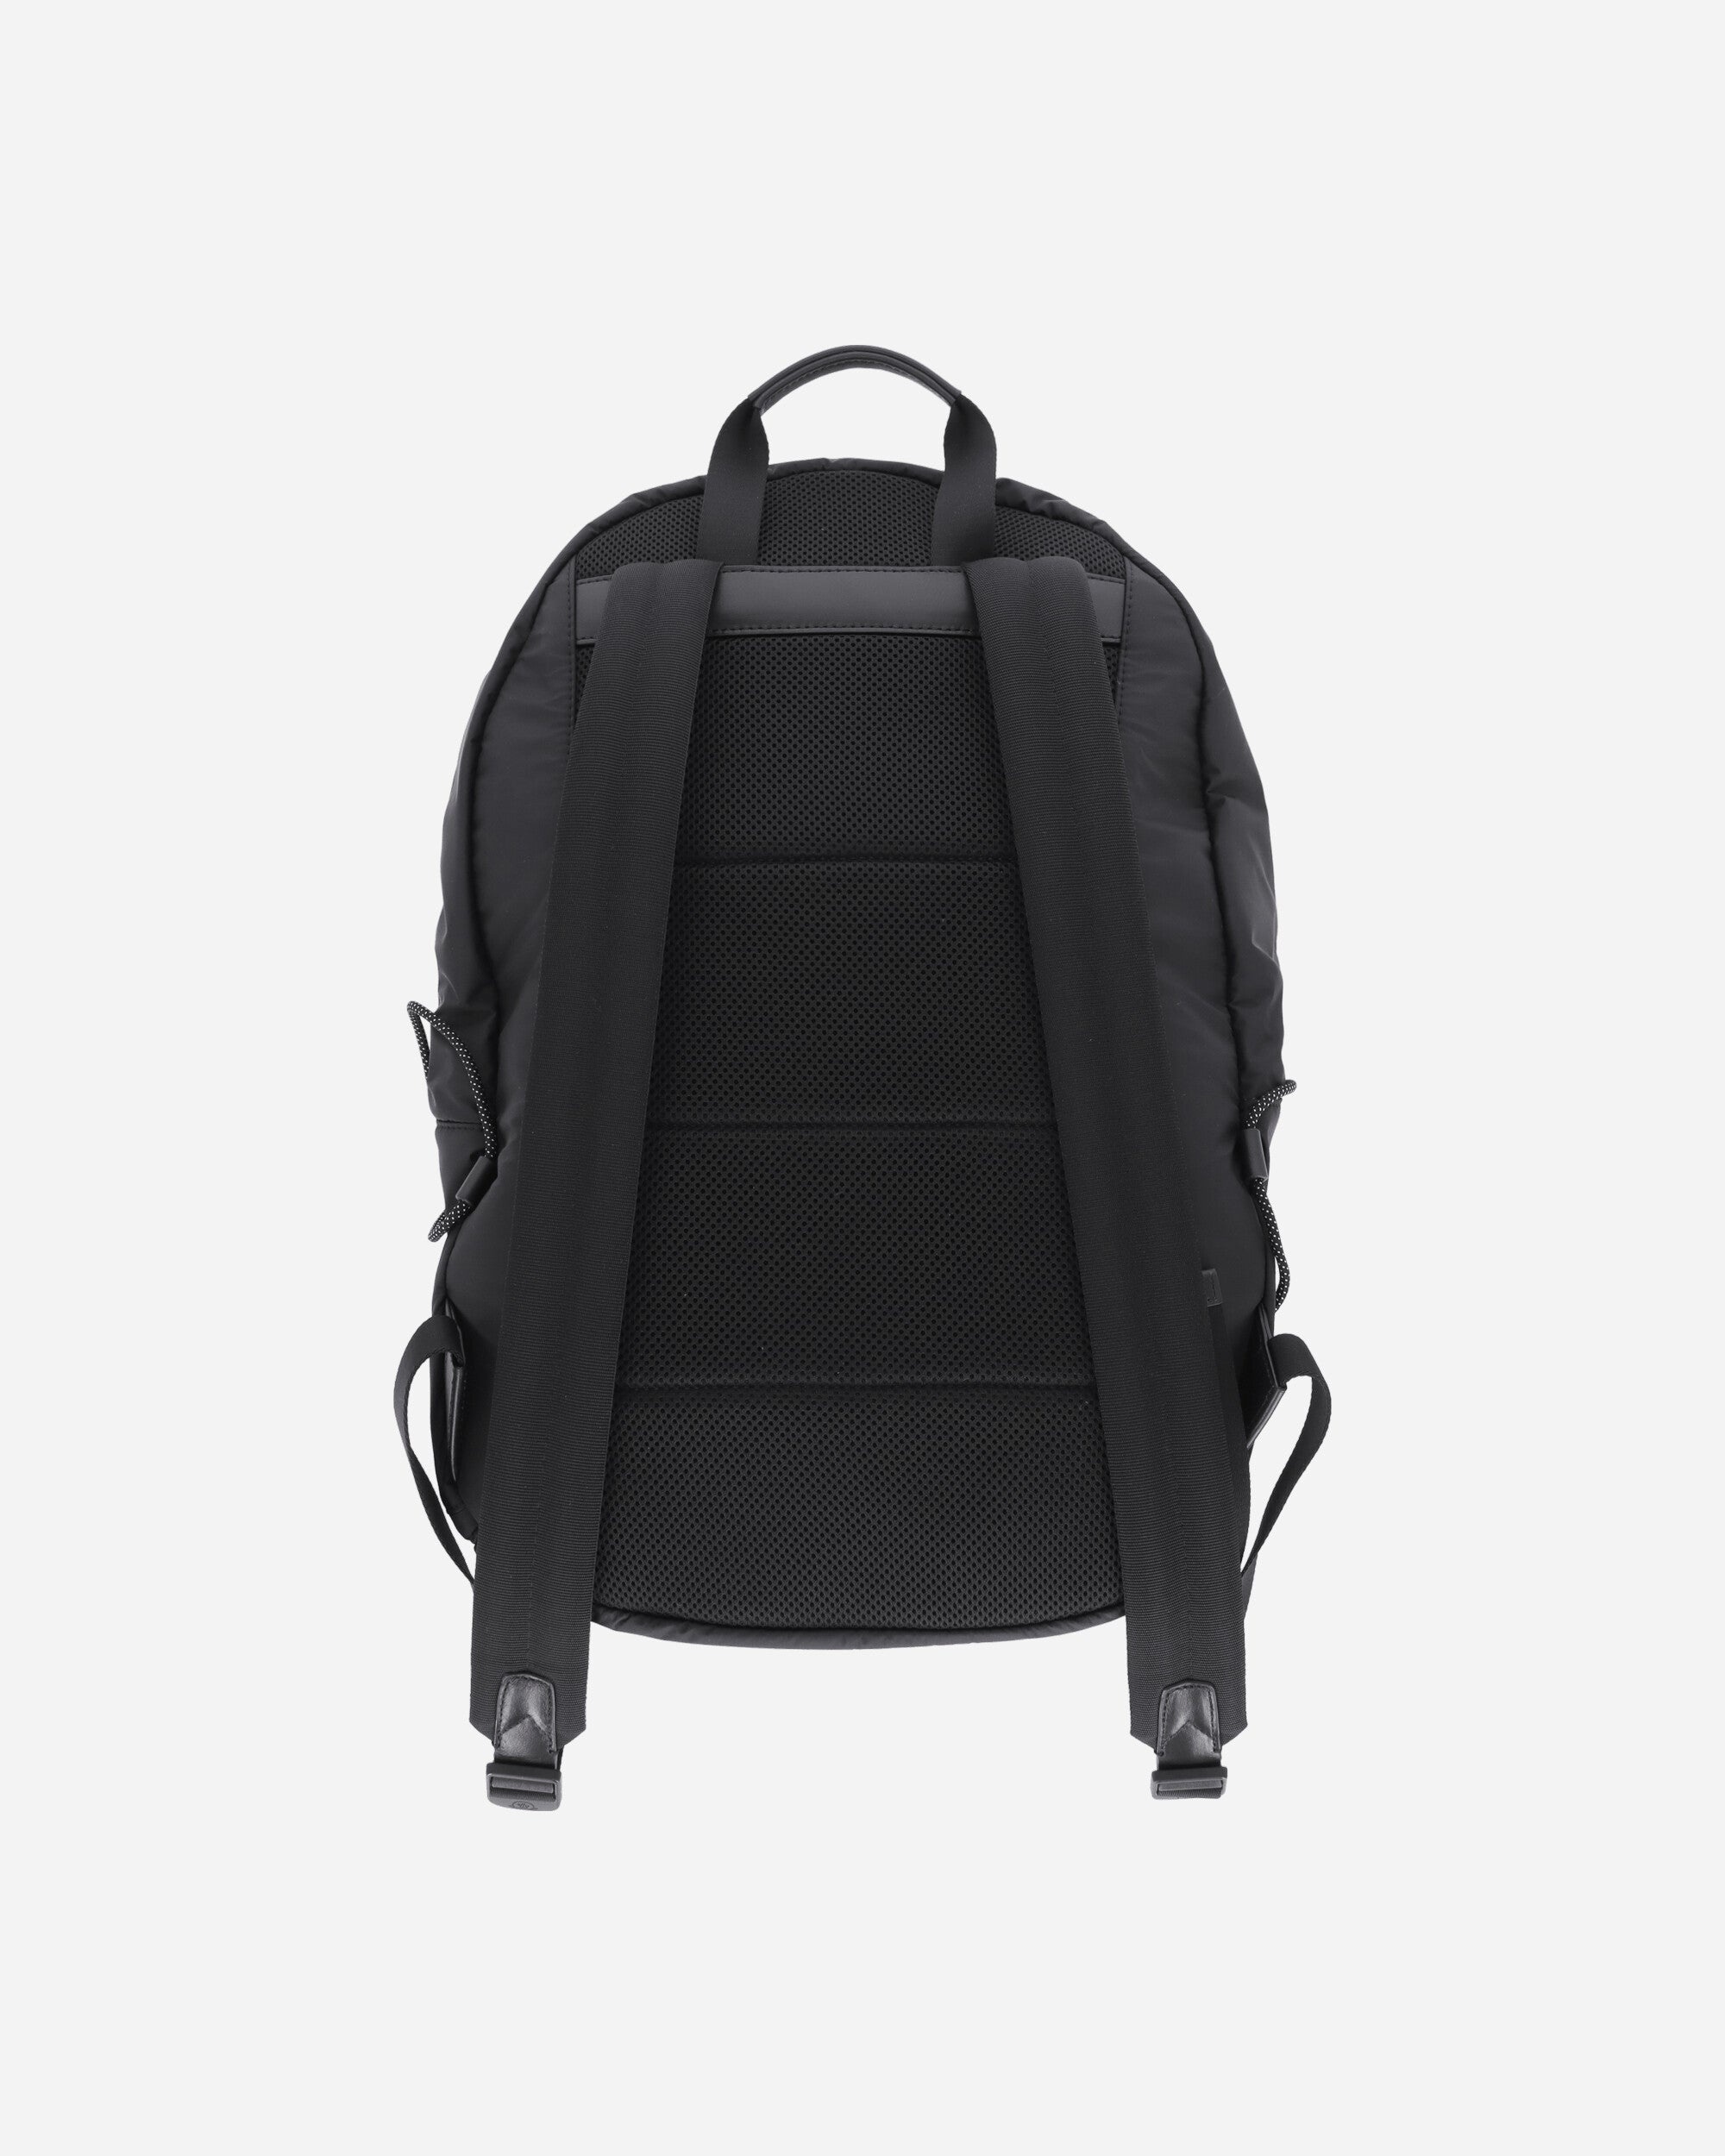 Makaio Backpack Black - 3